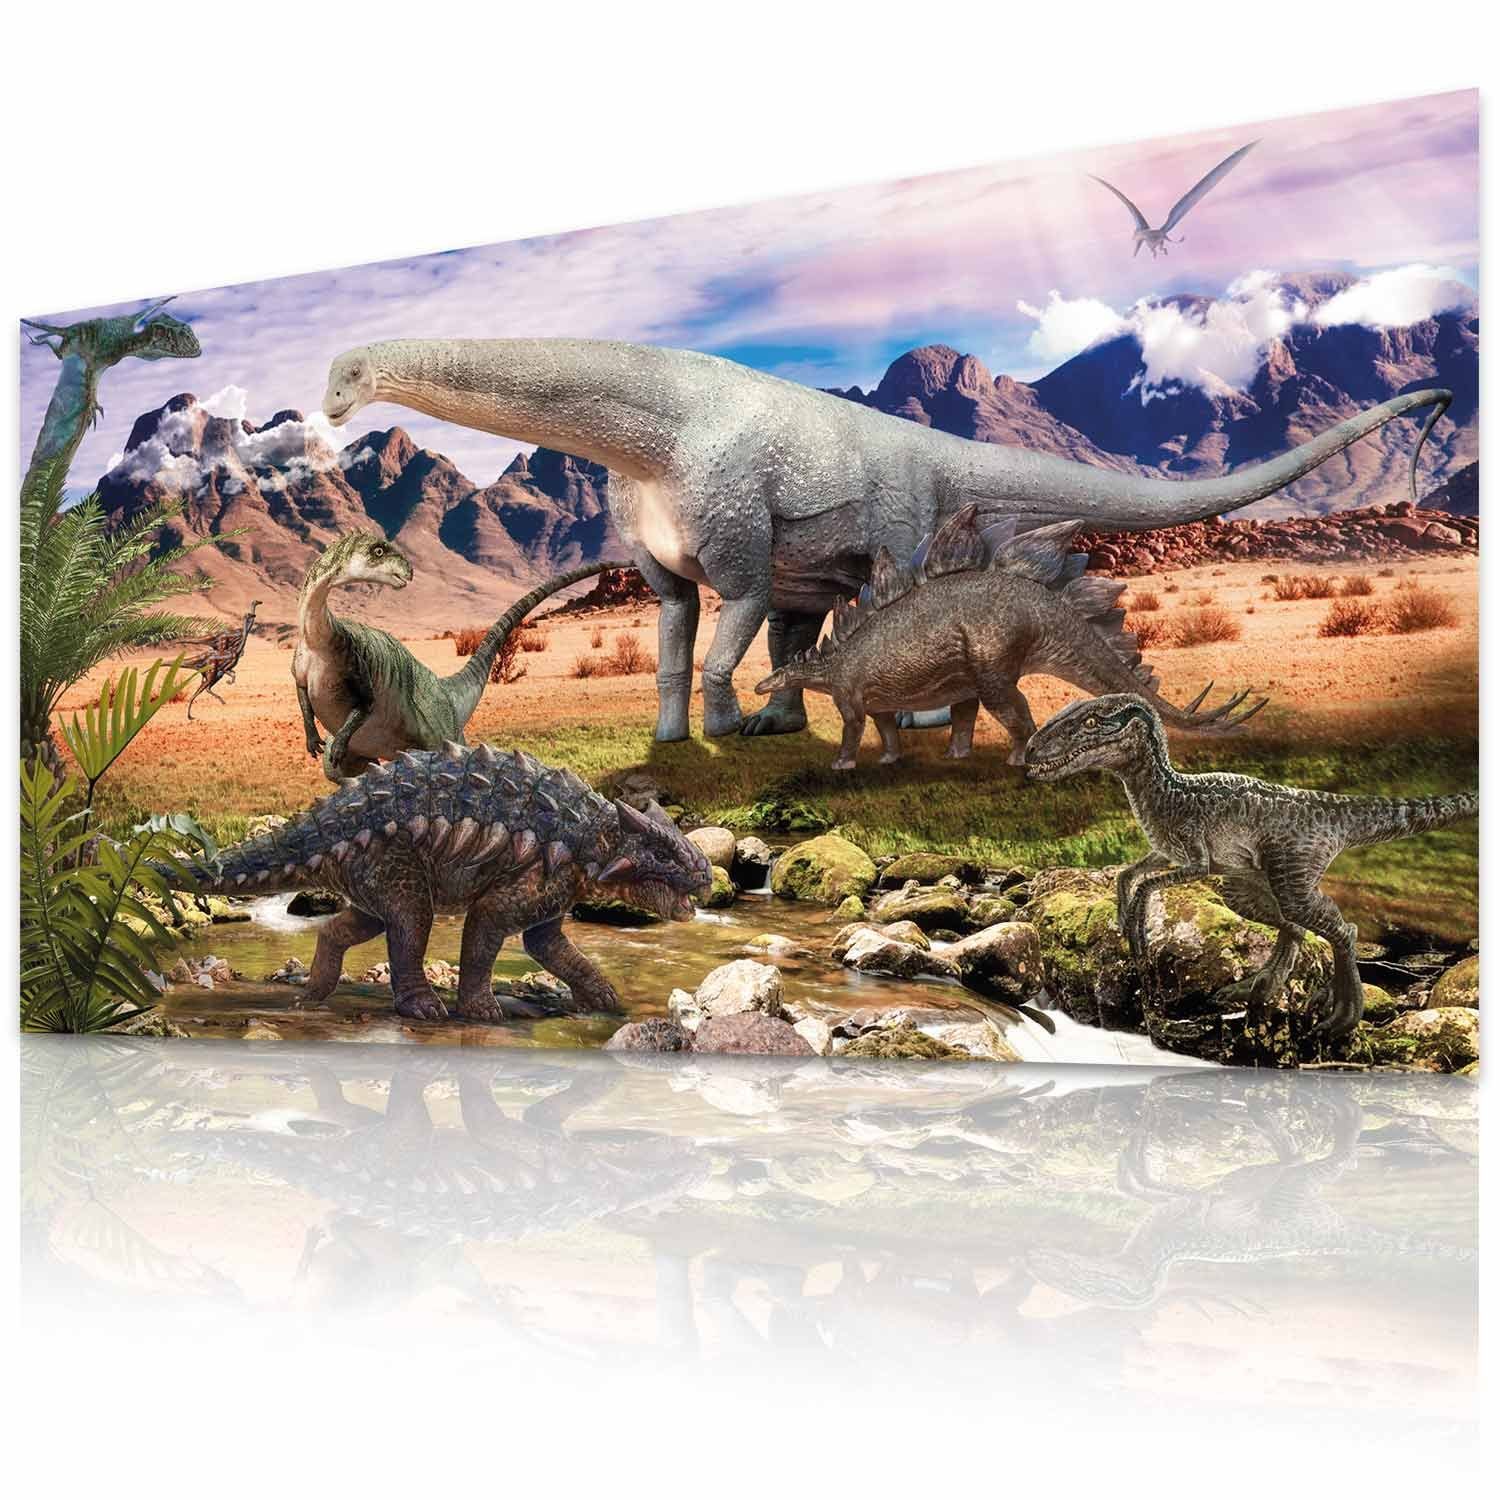 Goods+Gadgets Poster Dinosaurier Wandbild), Kunstdruck, Kinderzimmer Steppenlandschaft XXL (Dino Deko